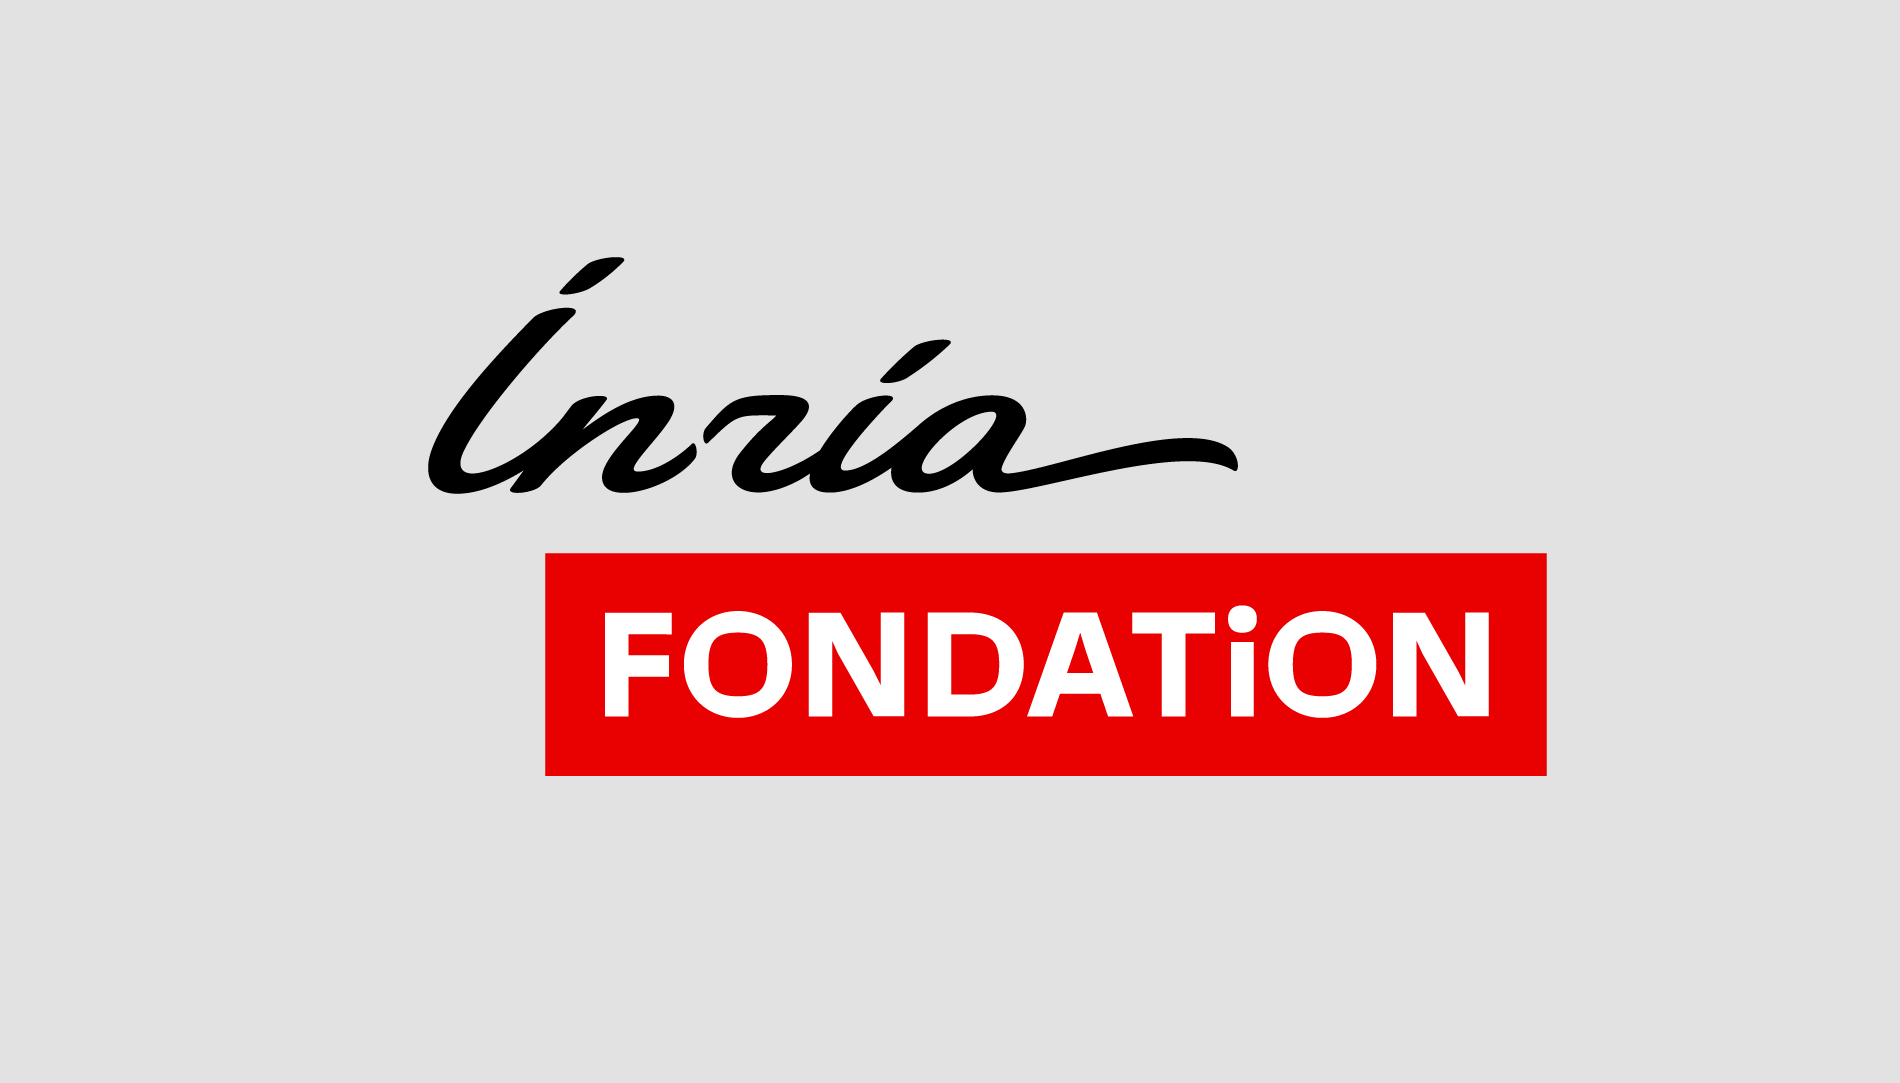 Logo de la Fondation Inria : Inria écrit en noir, Fondation dans un cartouche rouge en dessous, le tout sur fond gris